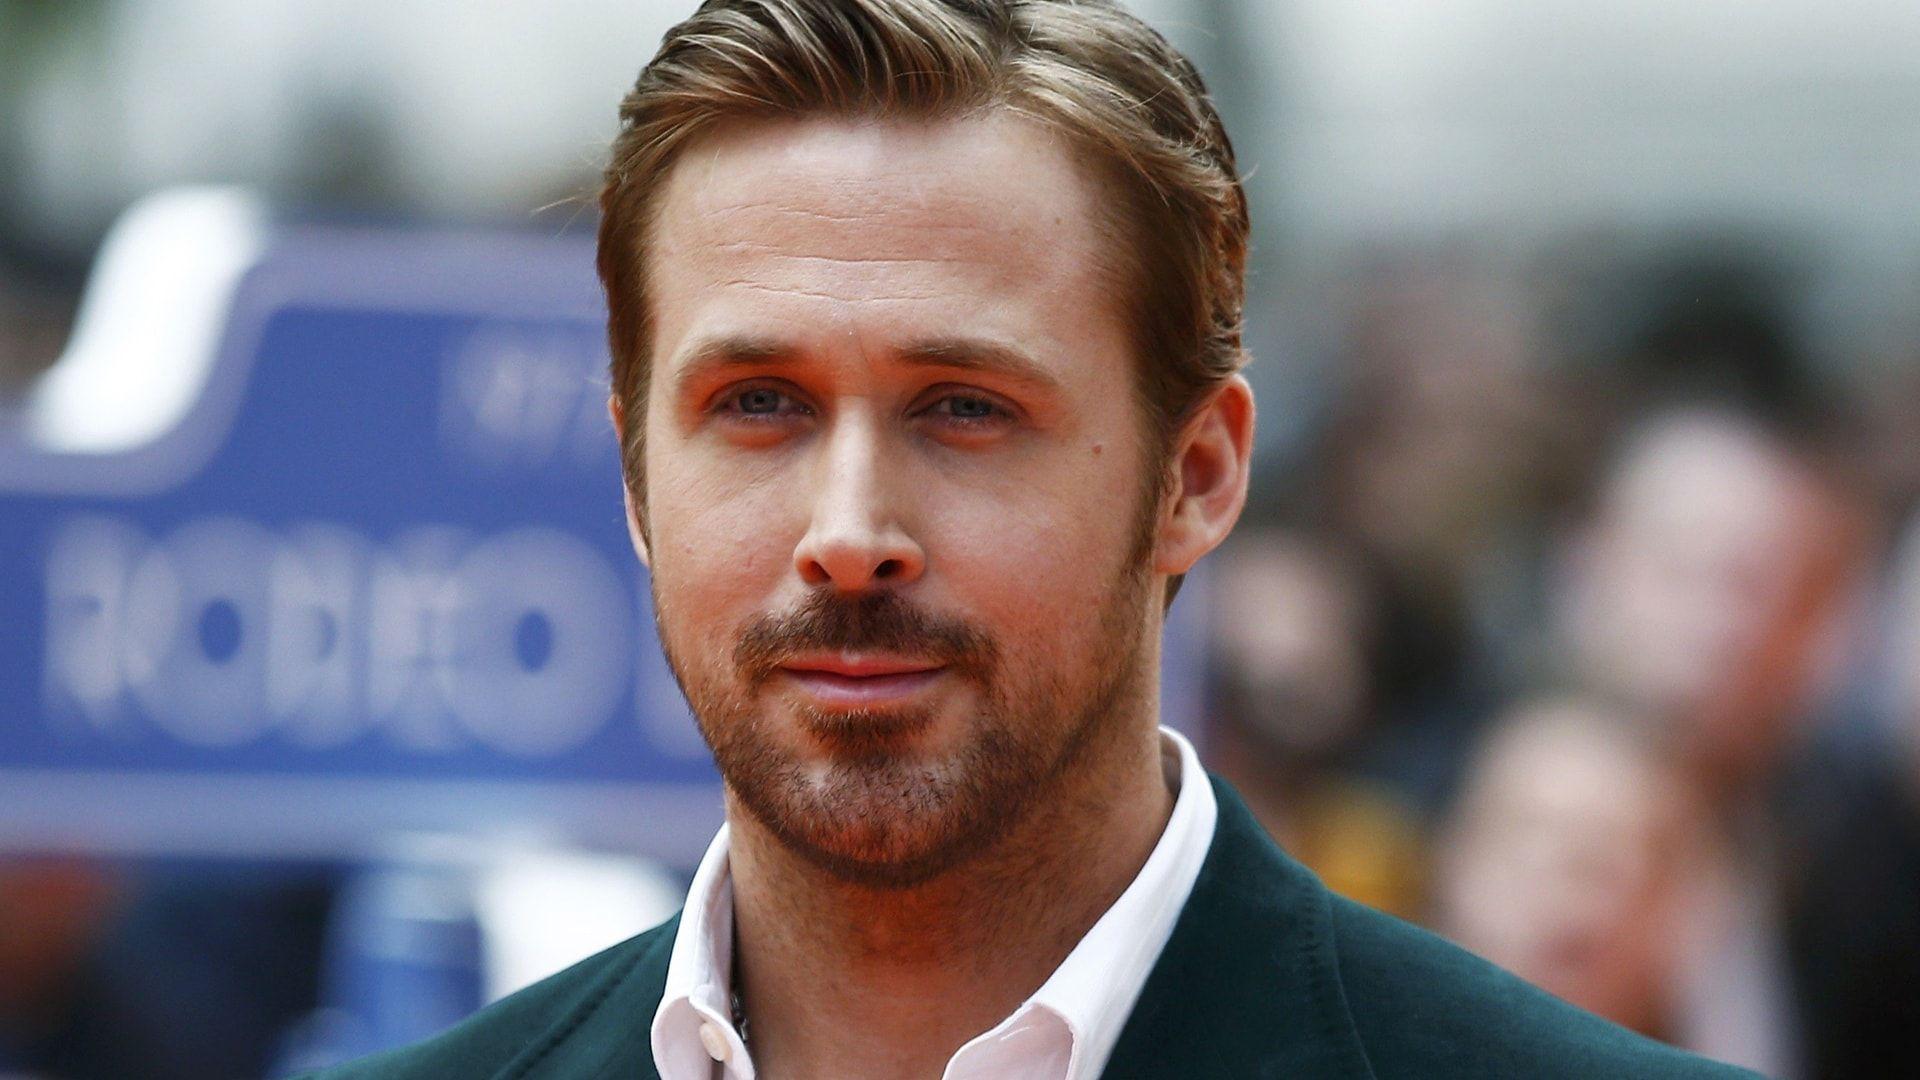 دانلود عکس جدید رایان گاسلینگ Ryan Gosling بازیگر معروف با بیوگرافی کامل